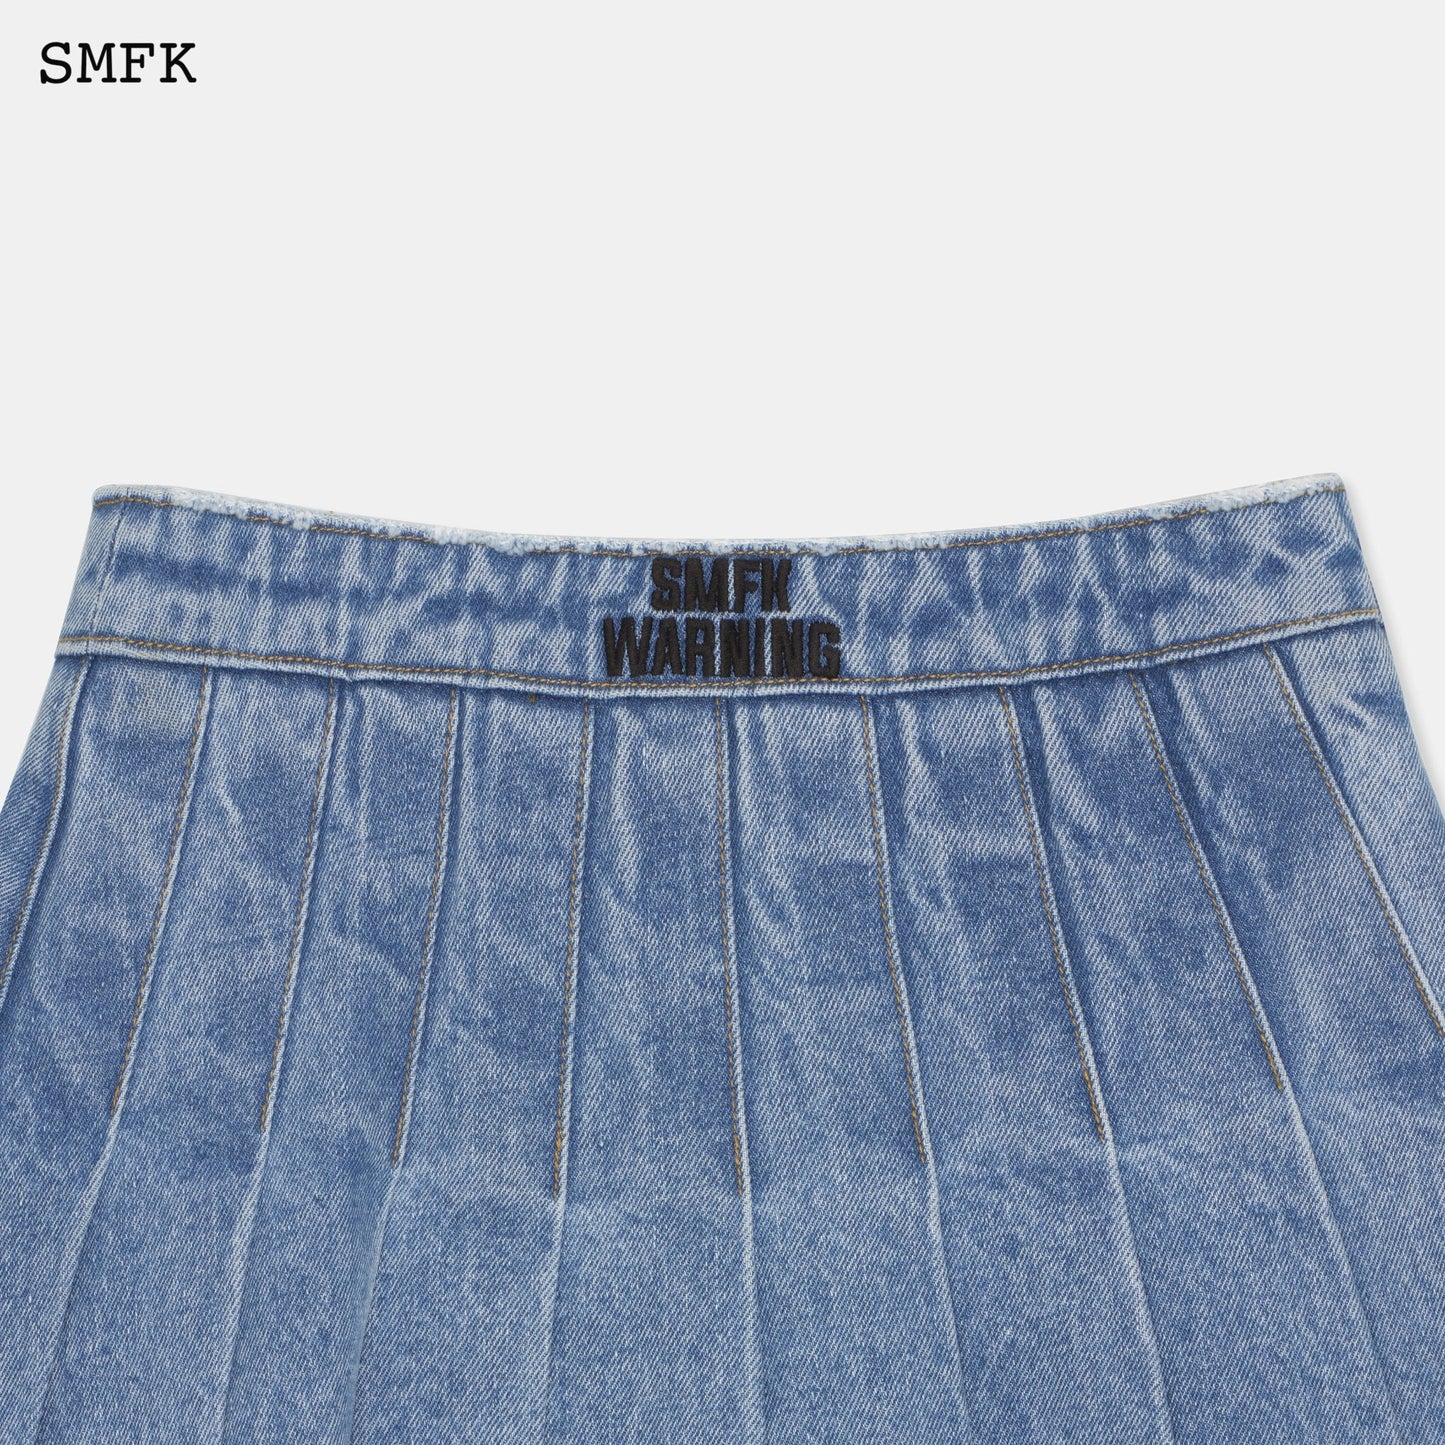 SMFK Wilderness Wandering Blue Pleated Short Skirt